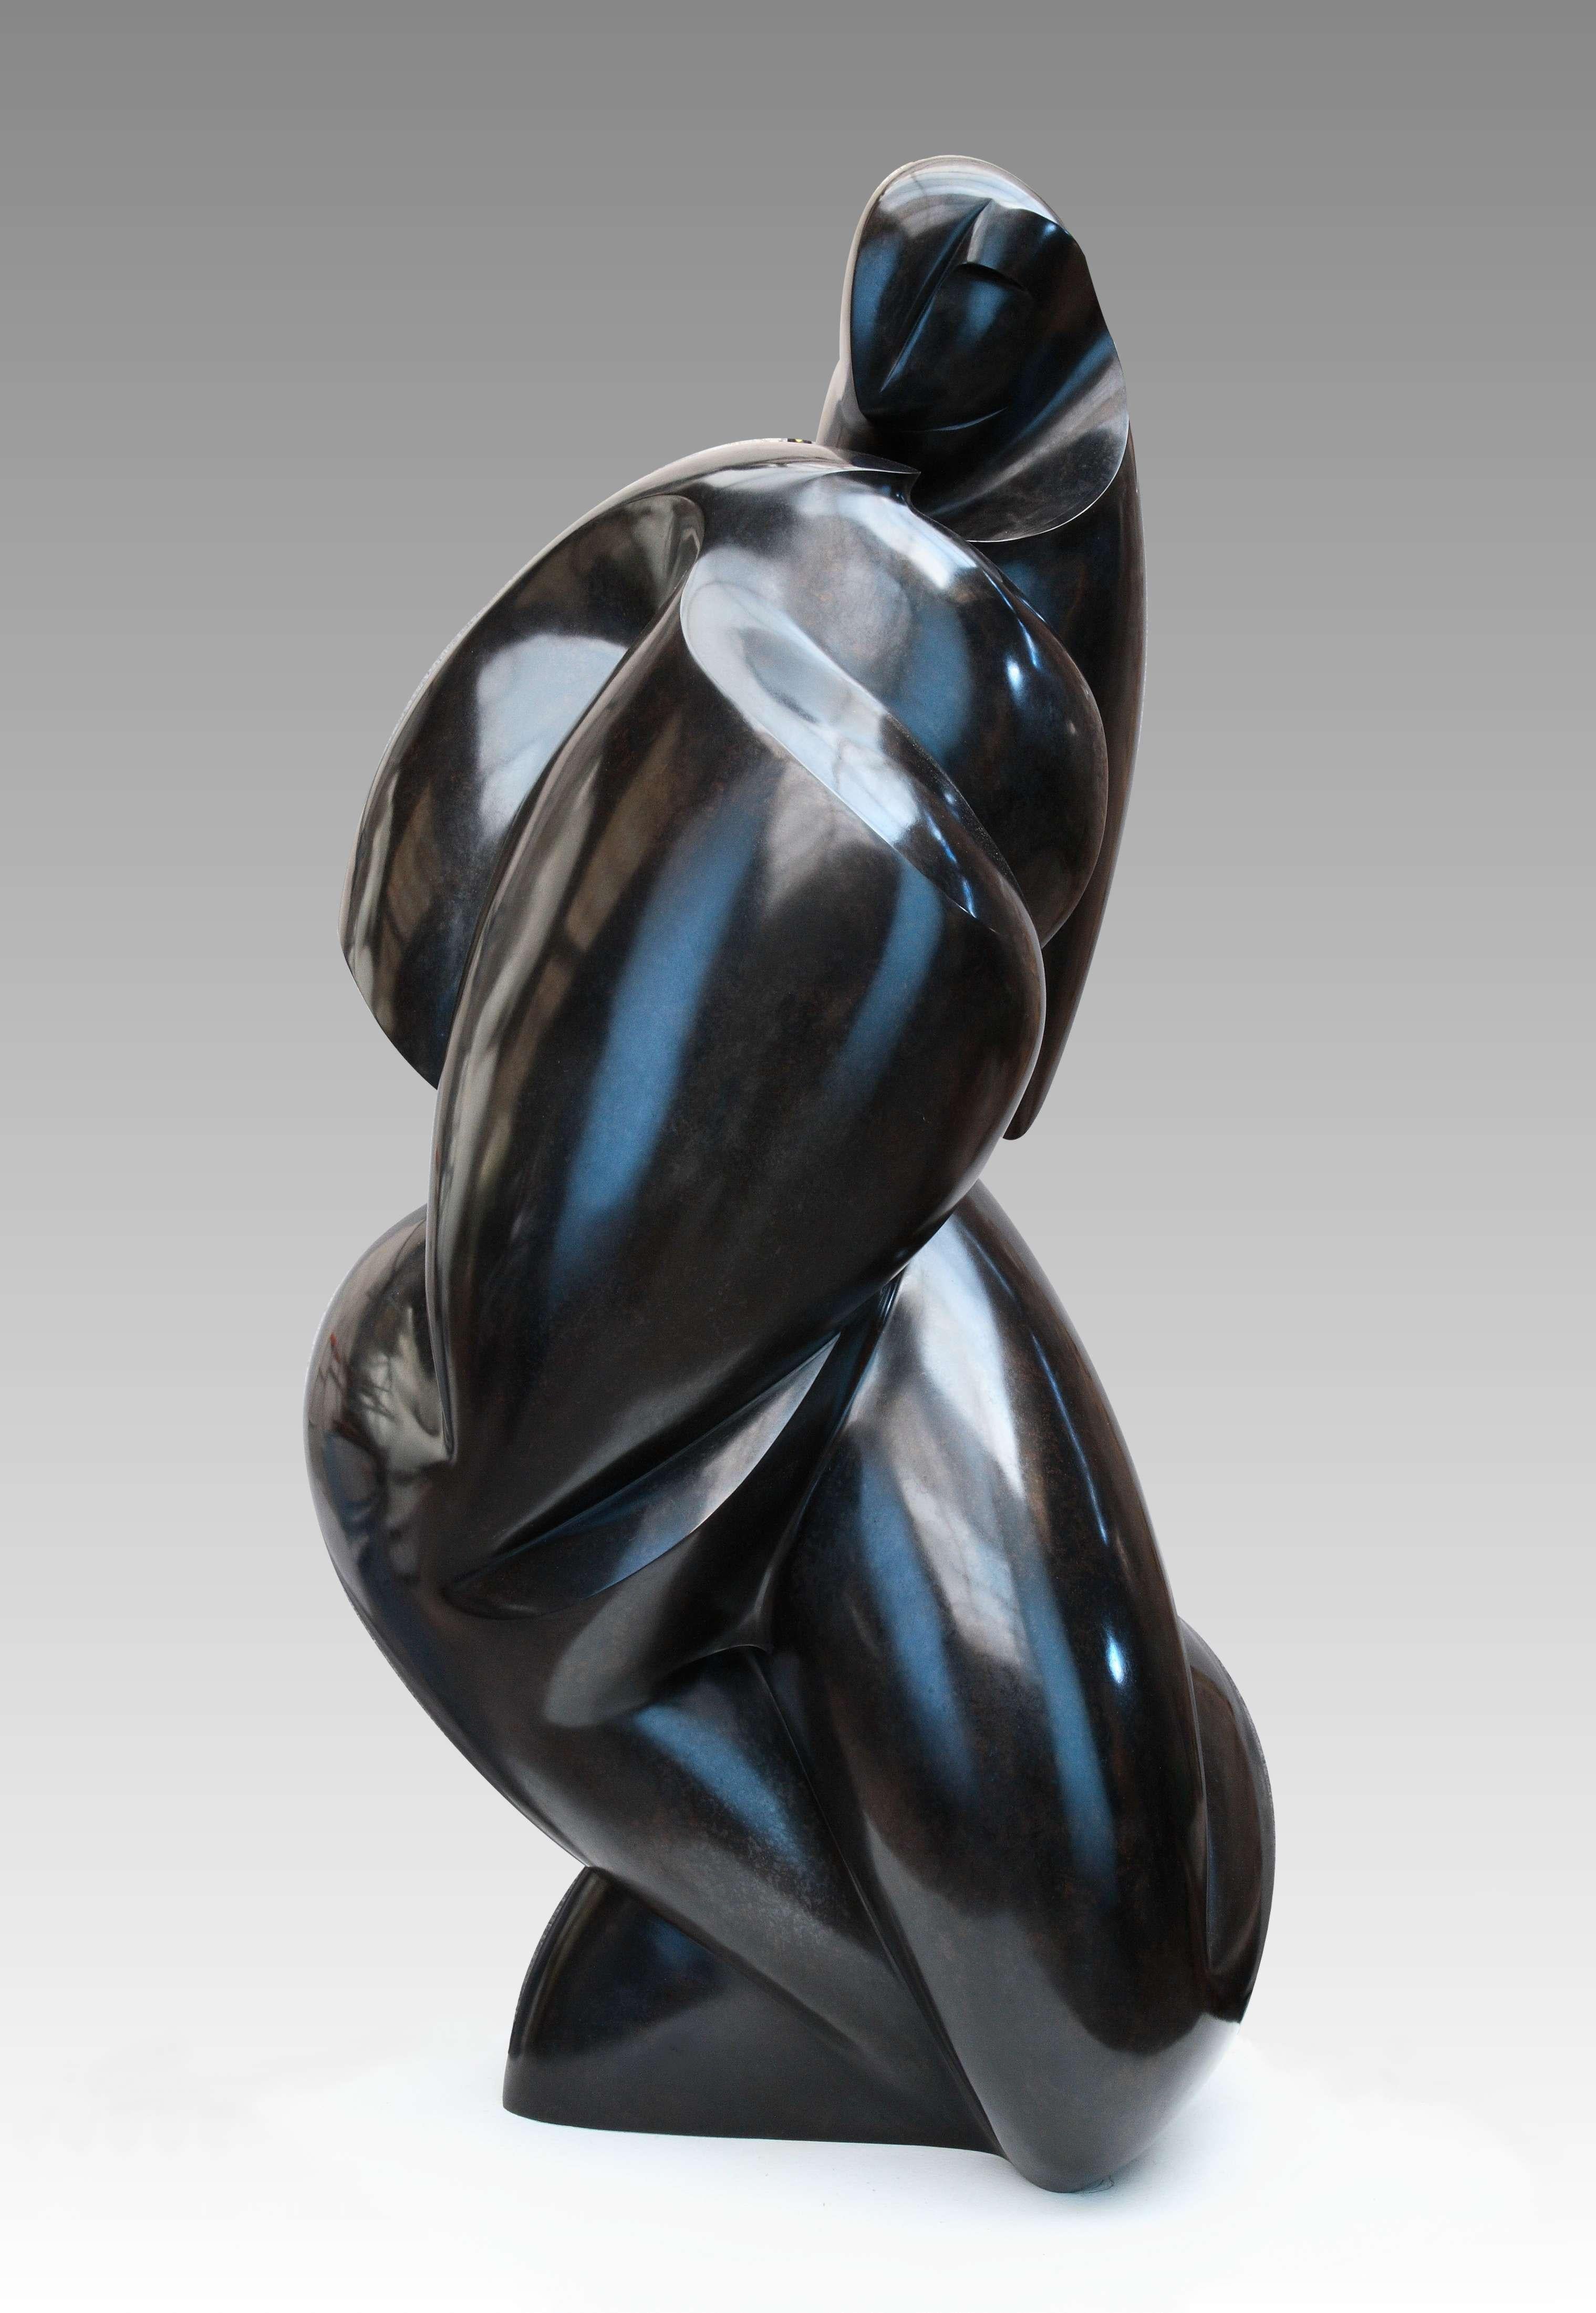 Pollès - Sculpture en bronze - Zinzolibdène
2015
128 x 68 x 64 cm
Edition : 1/3
Signé et numéroté

BIOGRAPHIE
Pollès est né à Paris en 1945
Comme Léonard de Vinci à la recherche de la perfection anatomique, de la représentation du mouvement, avec un